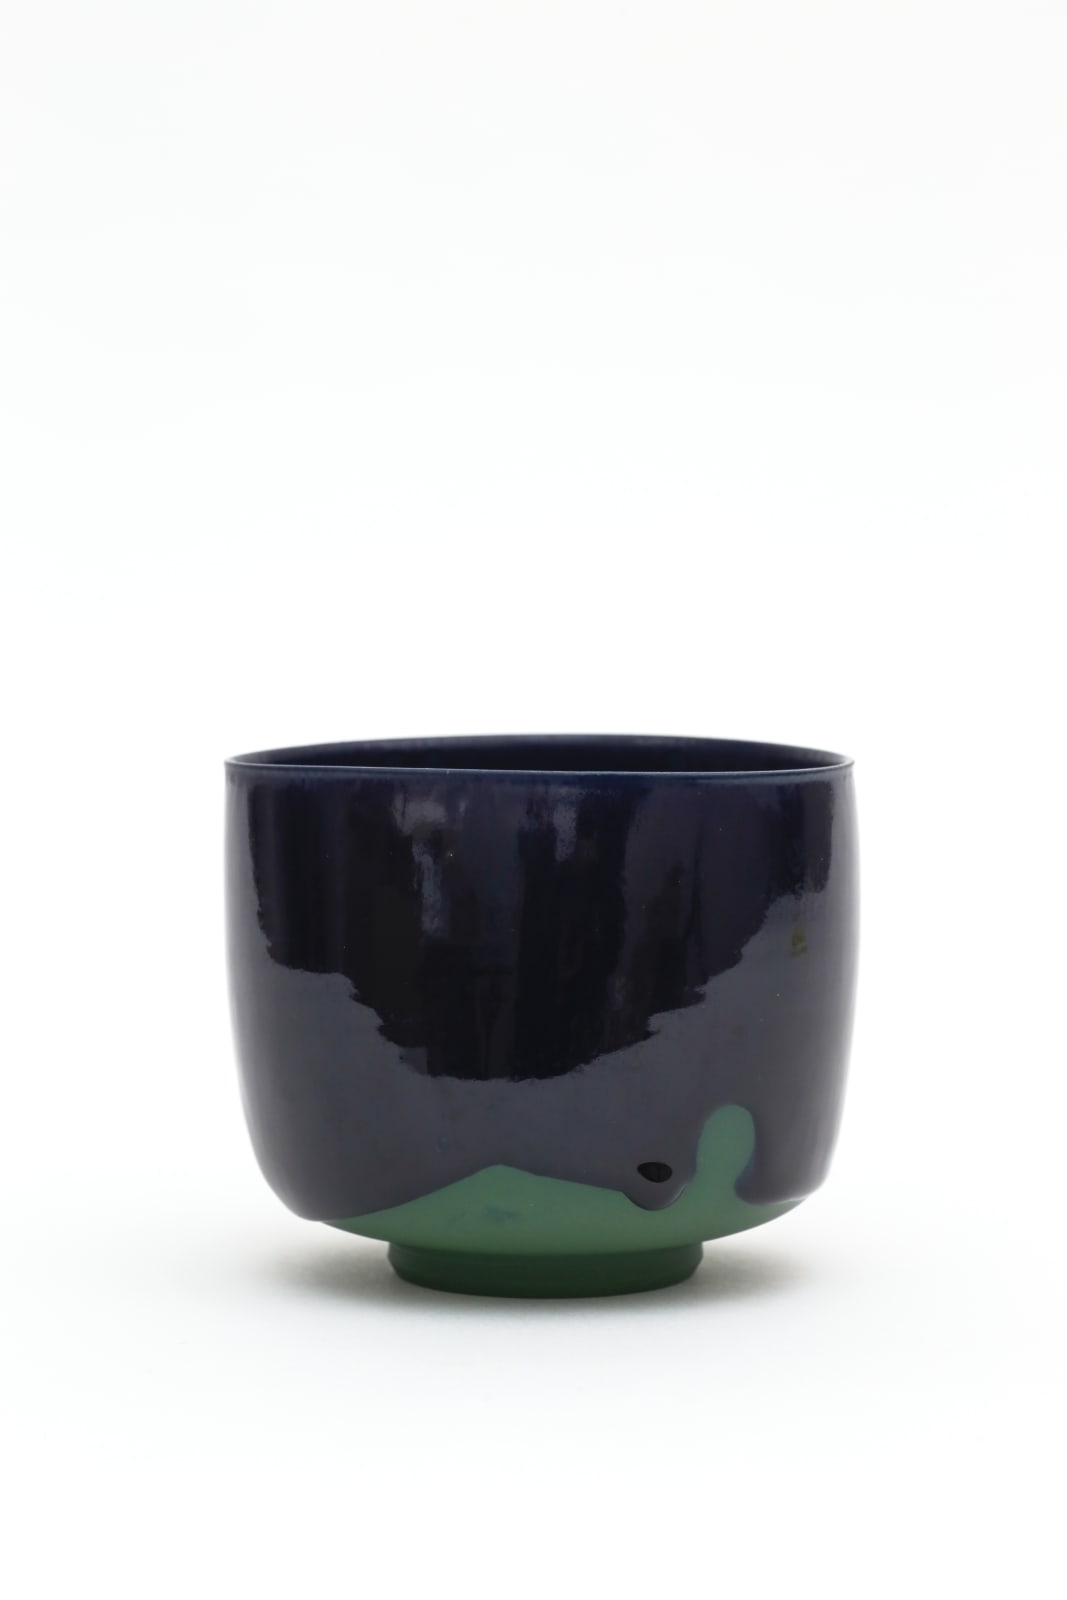 Akio Niisato, Green Tea Bowl , 2018